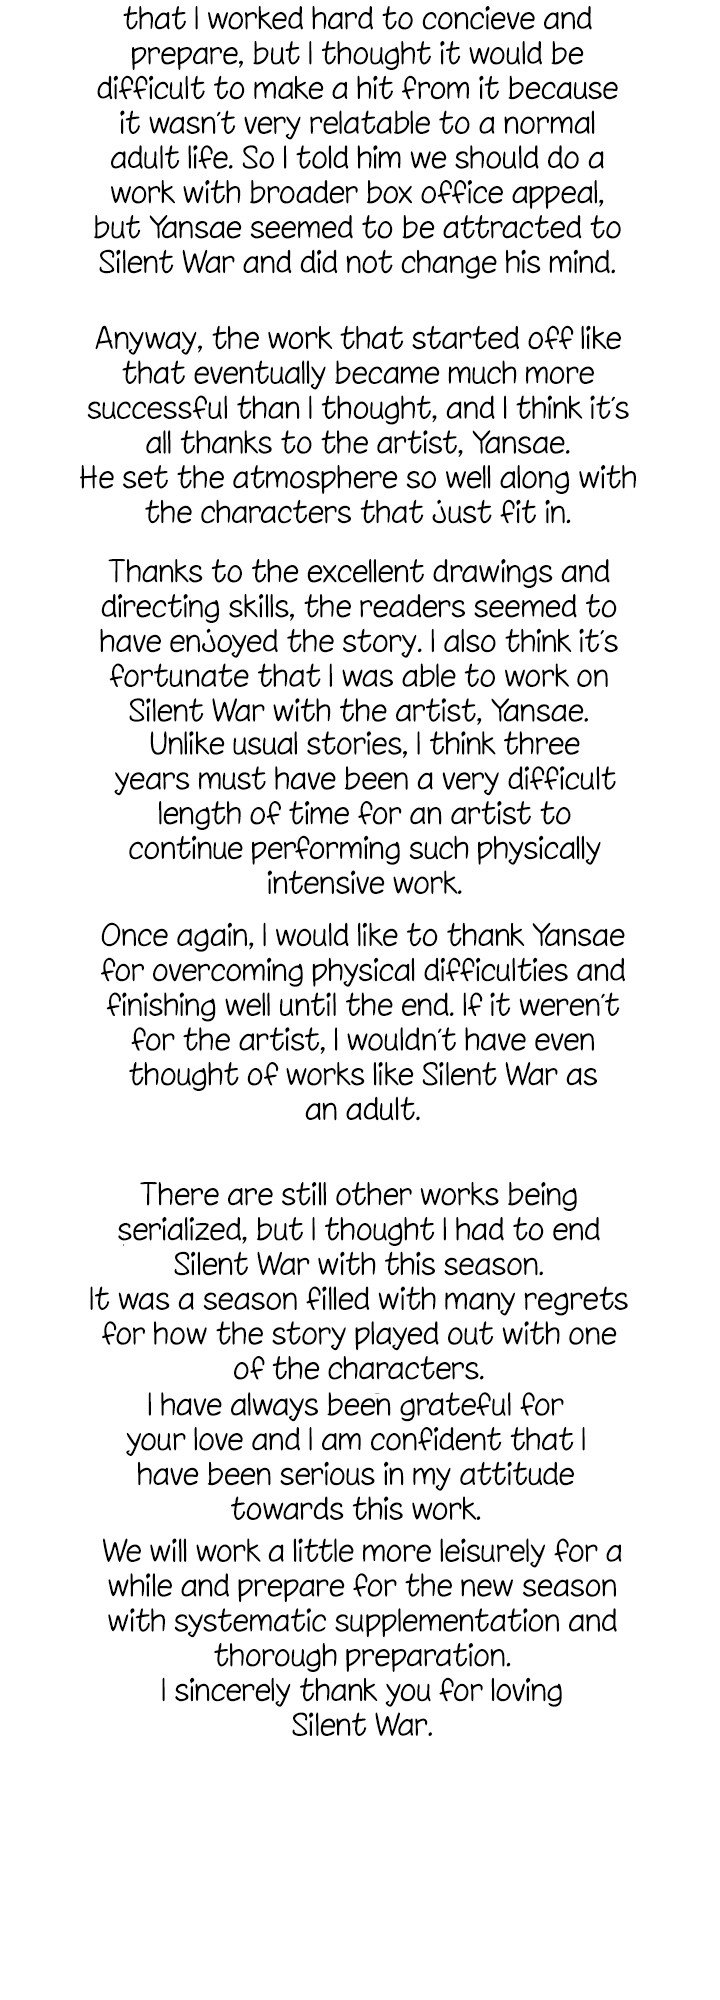 Silent War - Page 2